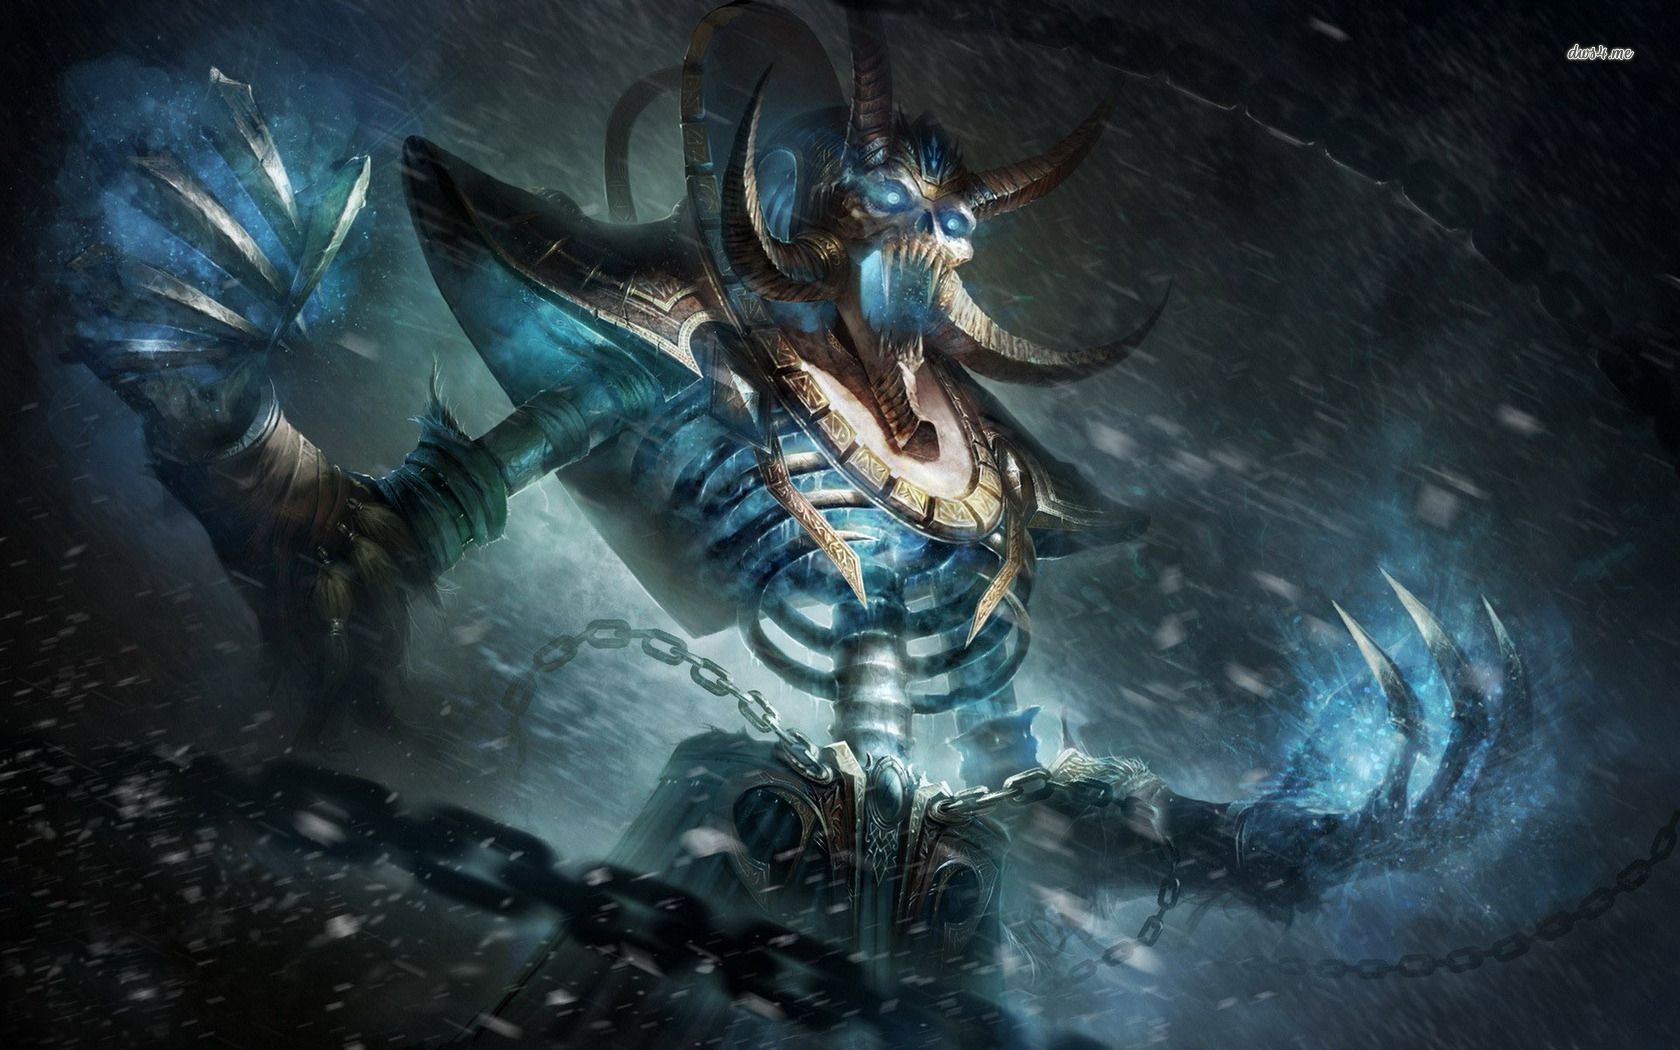 Kel'Thuzad - World of Warcraft wallpaper - Game wallpapers - #18020